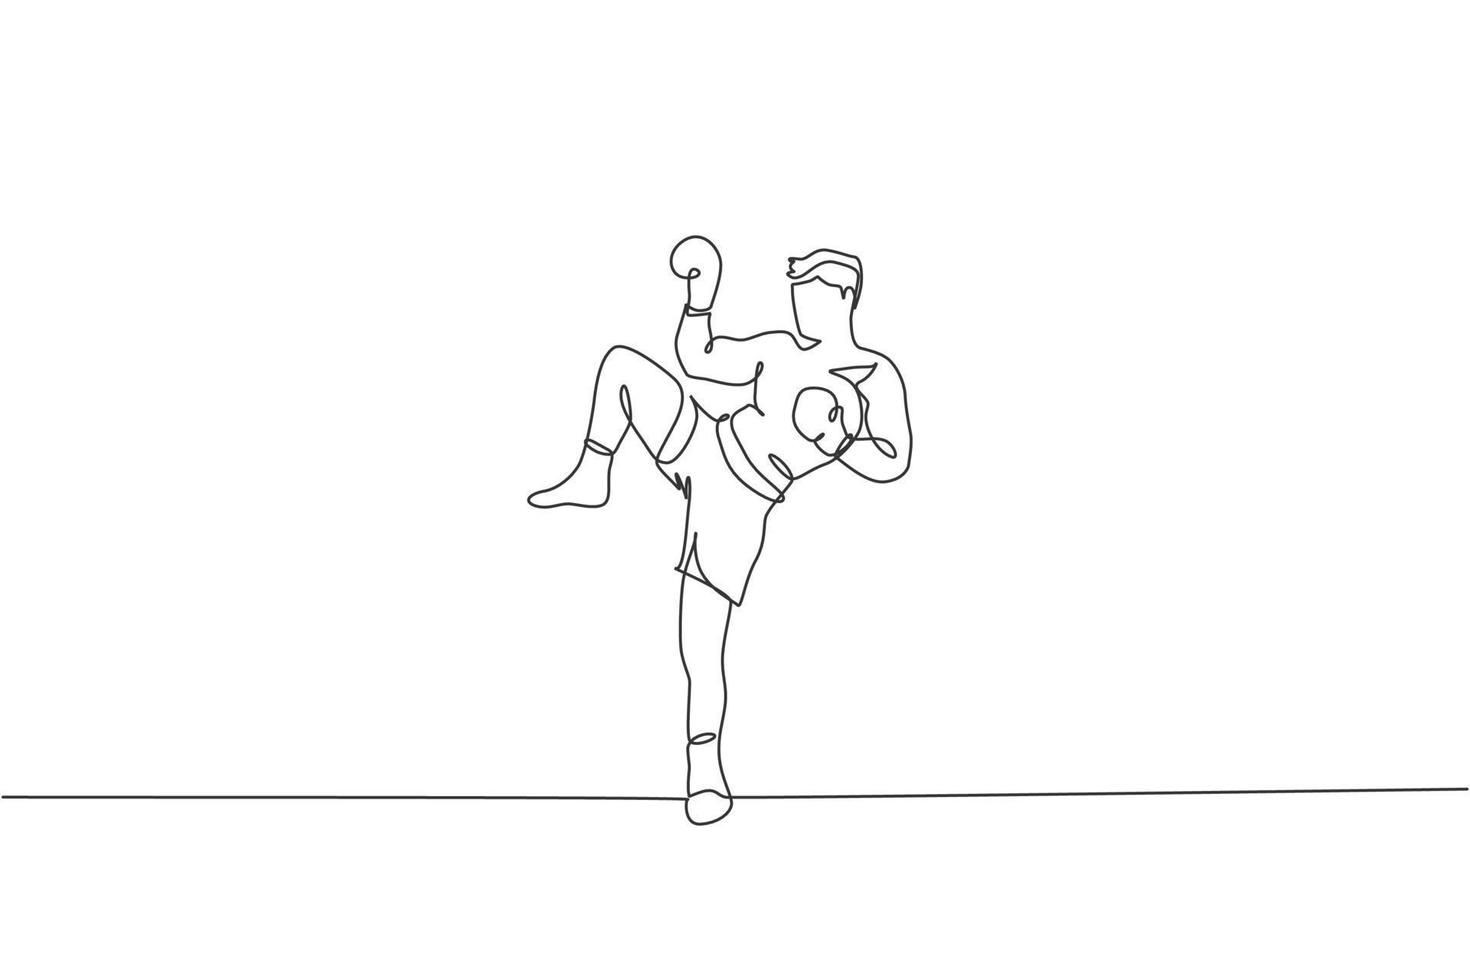 un disegno a linea continua di un giovane pugile muay thai sportivo che si prepara a combattere, calcio in posizione all'arena dei box. concetto di gioco di sport di combattimento. grafico dinamico dell'illustrazione di vettore del disegno di linea singola